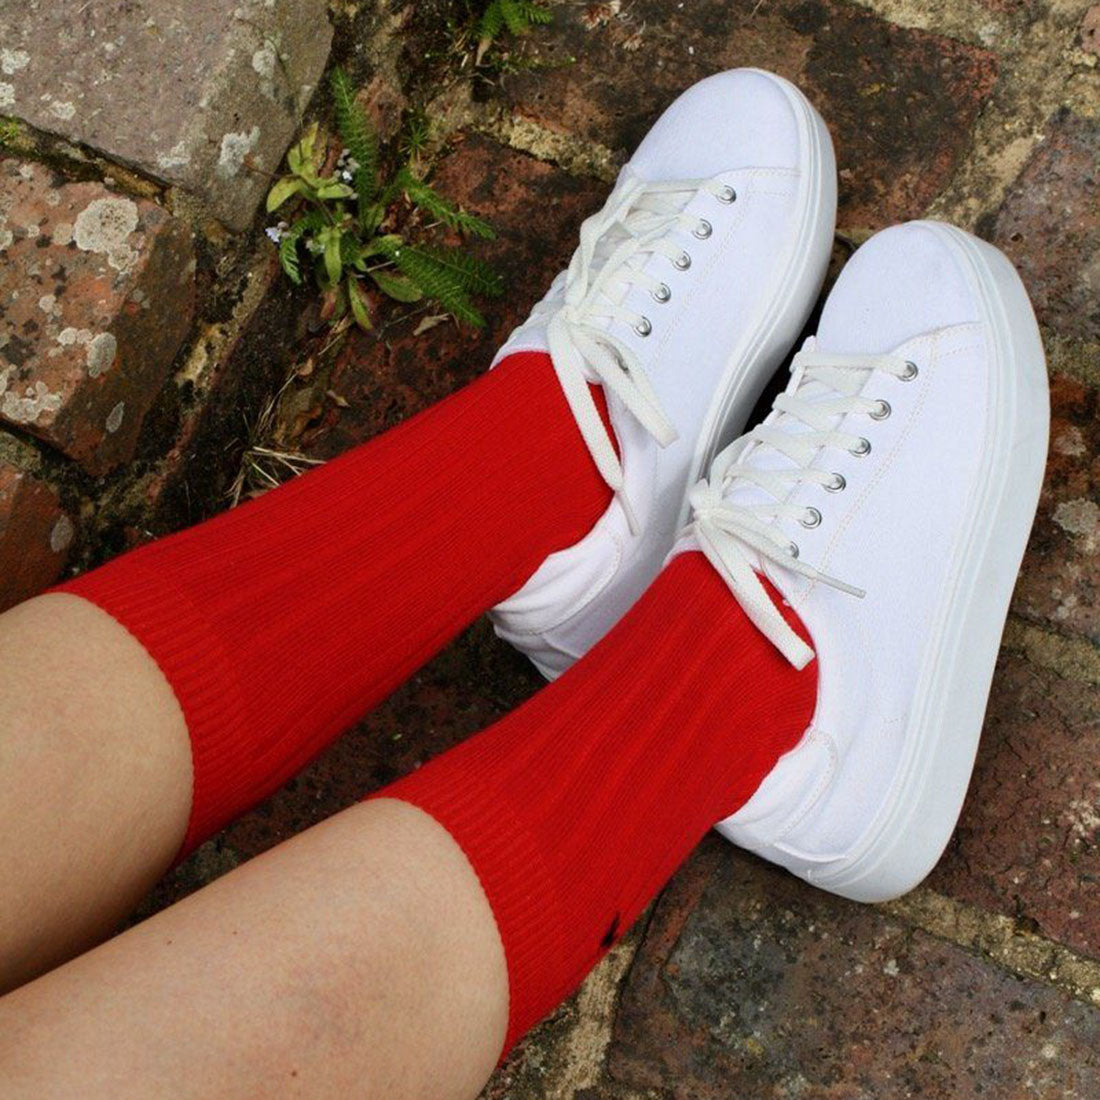 socks-red-bamboo-socks-2.jpg